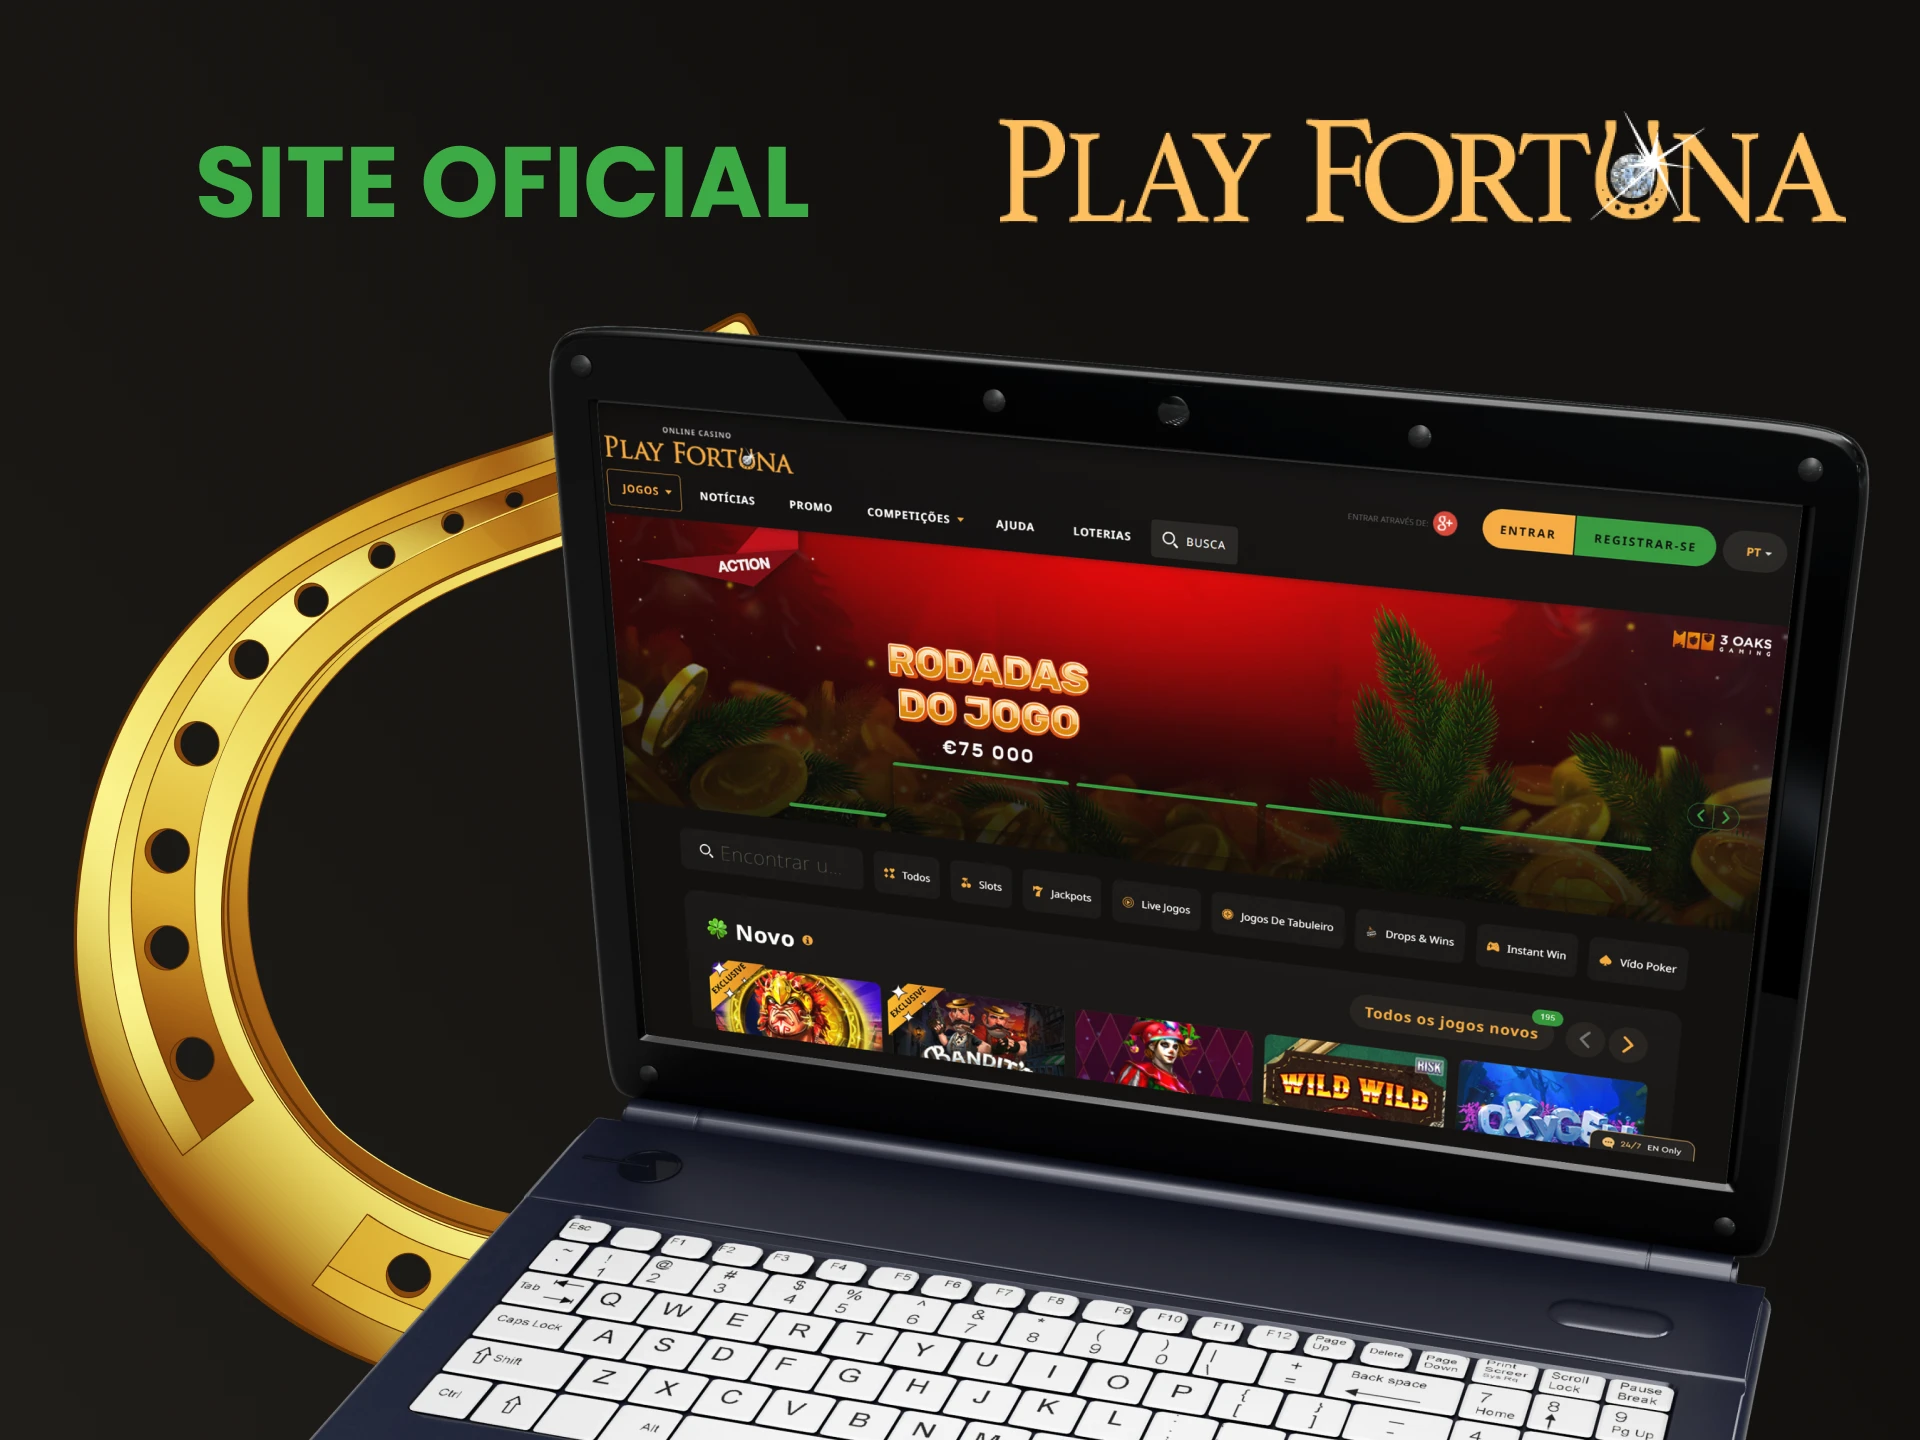 Visite a página oficial do site Play Fortuna.